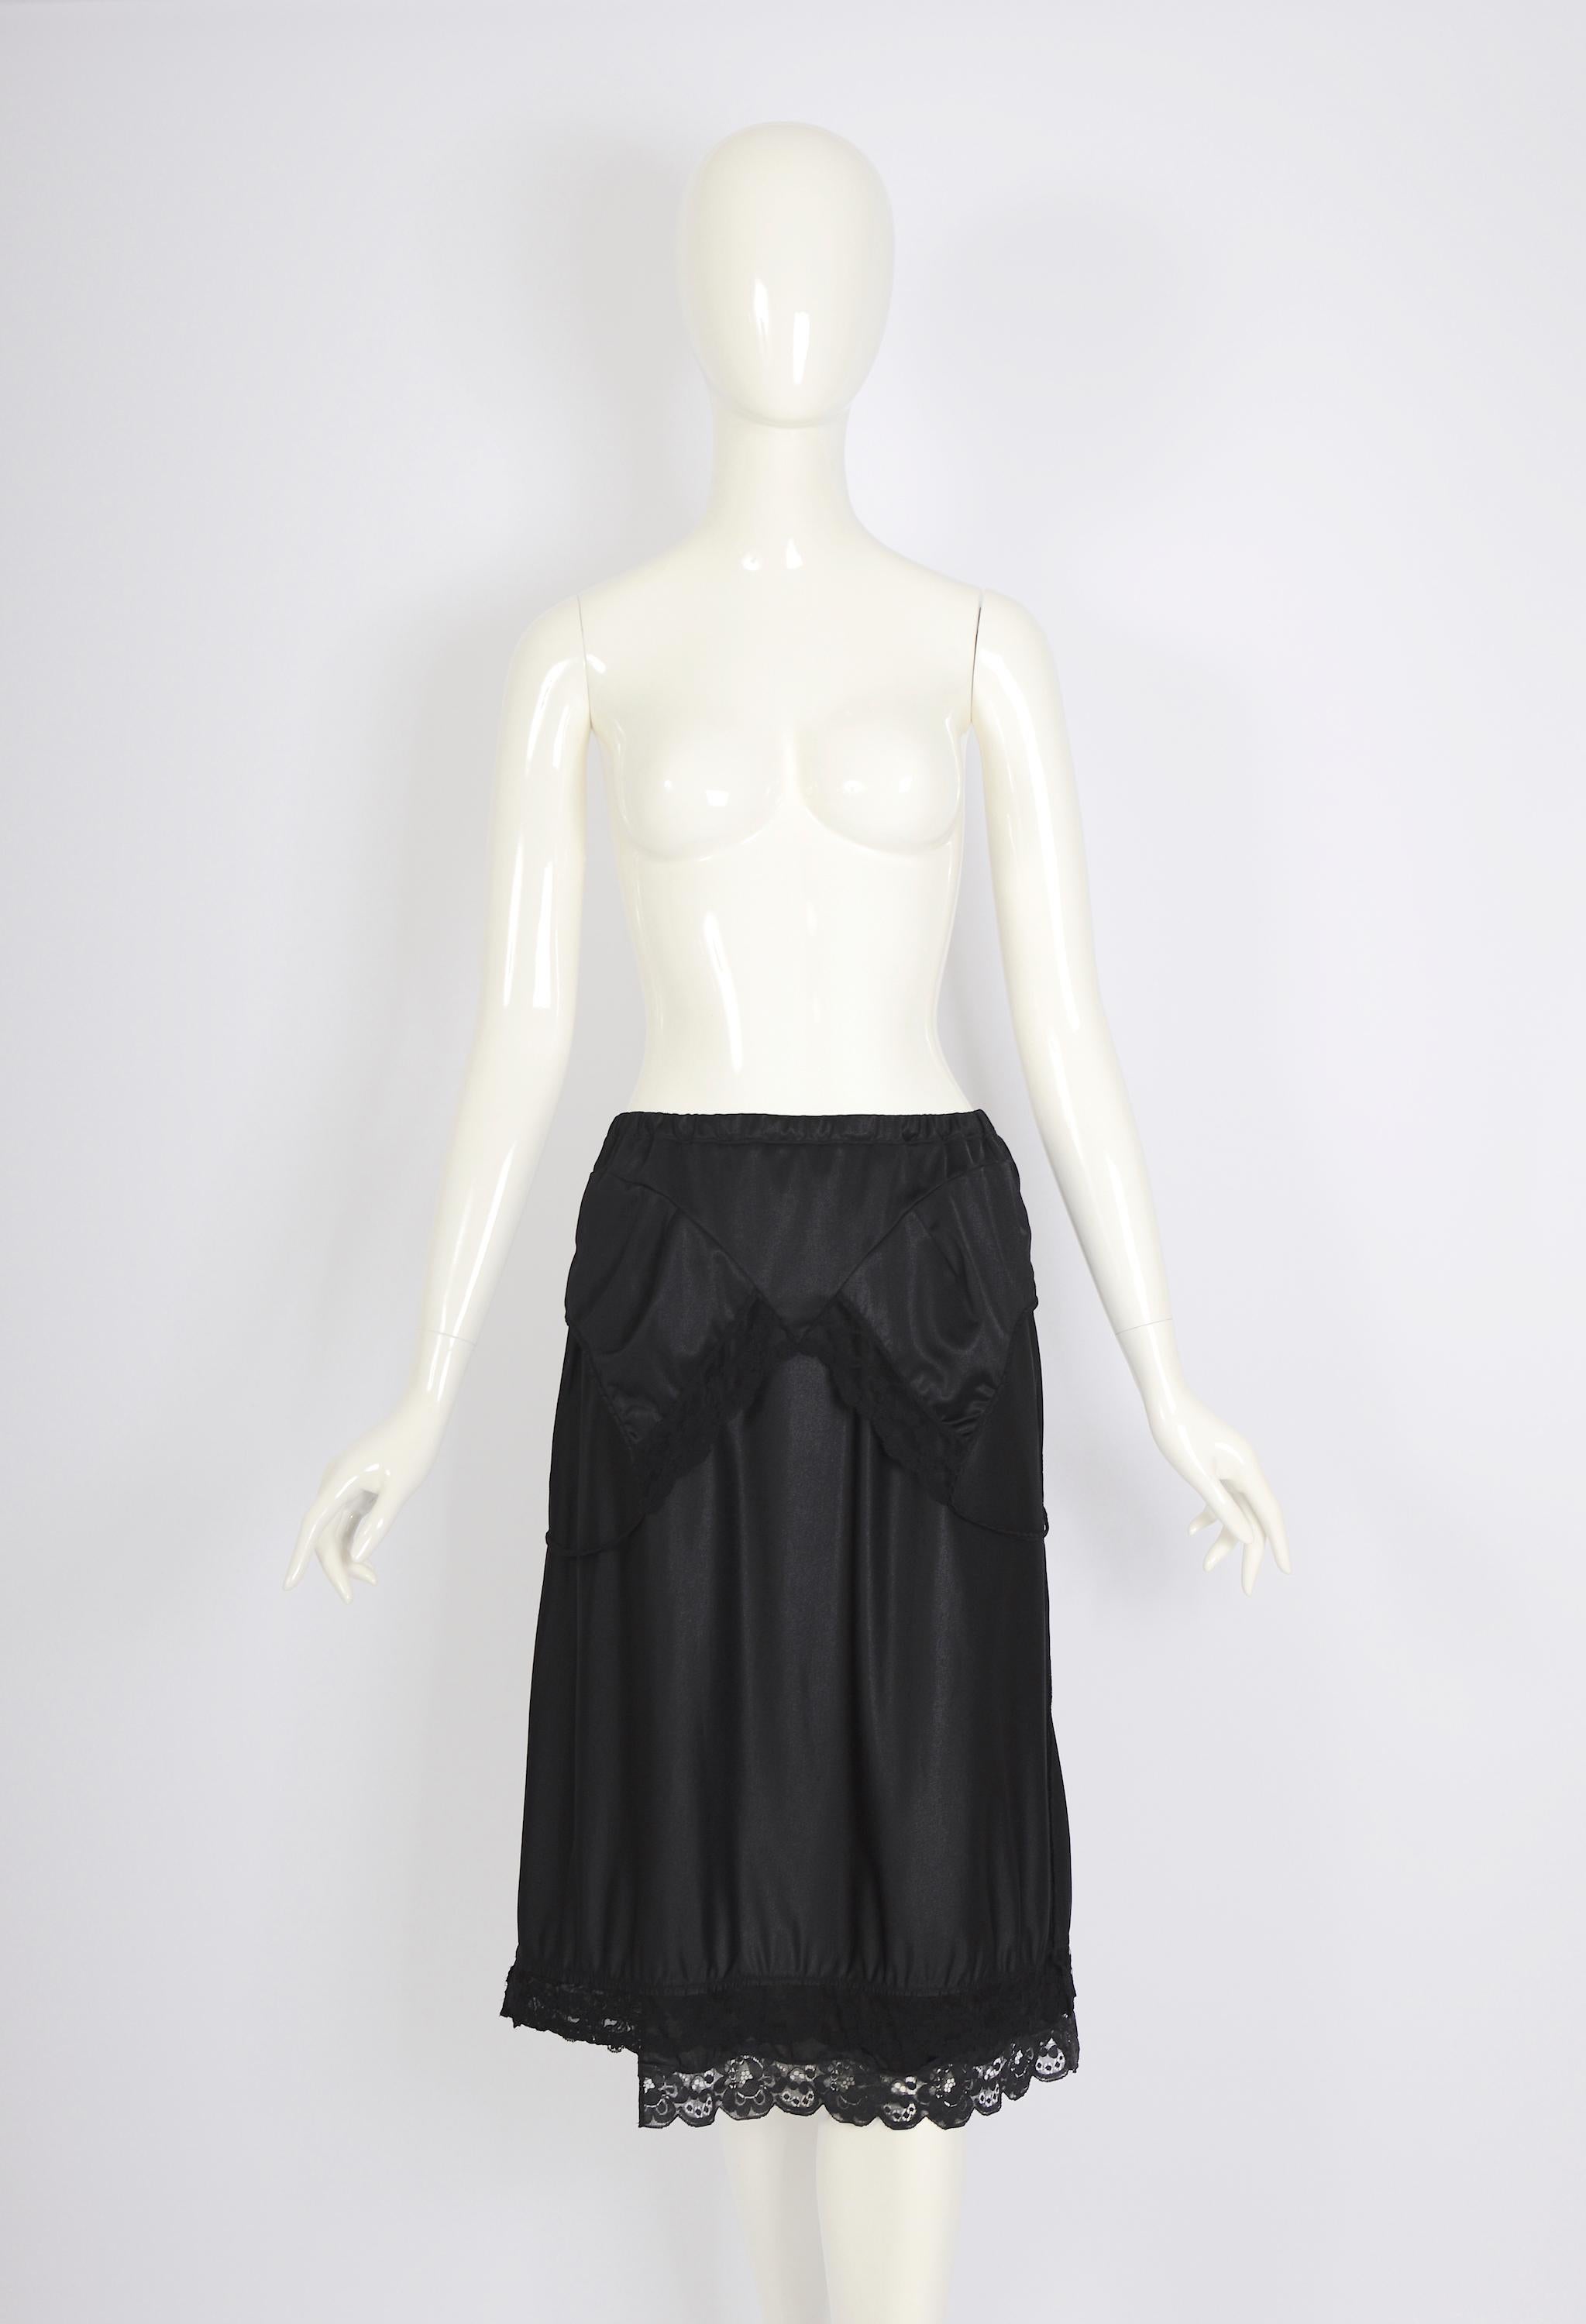 Ikonisches Sammlerstück von Martin Margiela. Vintage-Kollektion Martin Margiela Frühjahr-Sommer 2003, schwarzes Dessous-Kleid aus Polyester, das gekonnt in einen Rock umgewandelt wurde. Dies ist die kurze Version des Modells, das auf dem Laufsteg zu